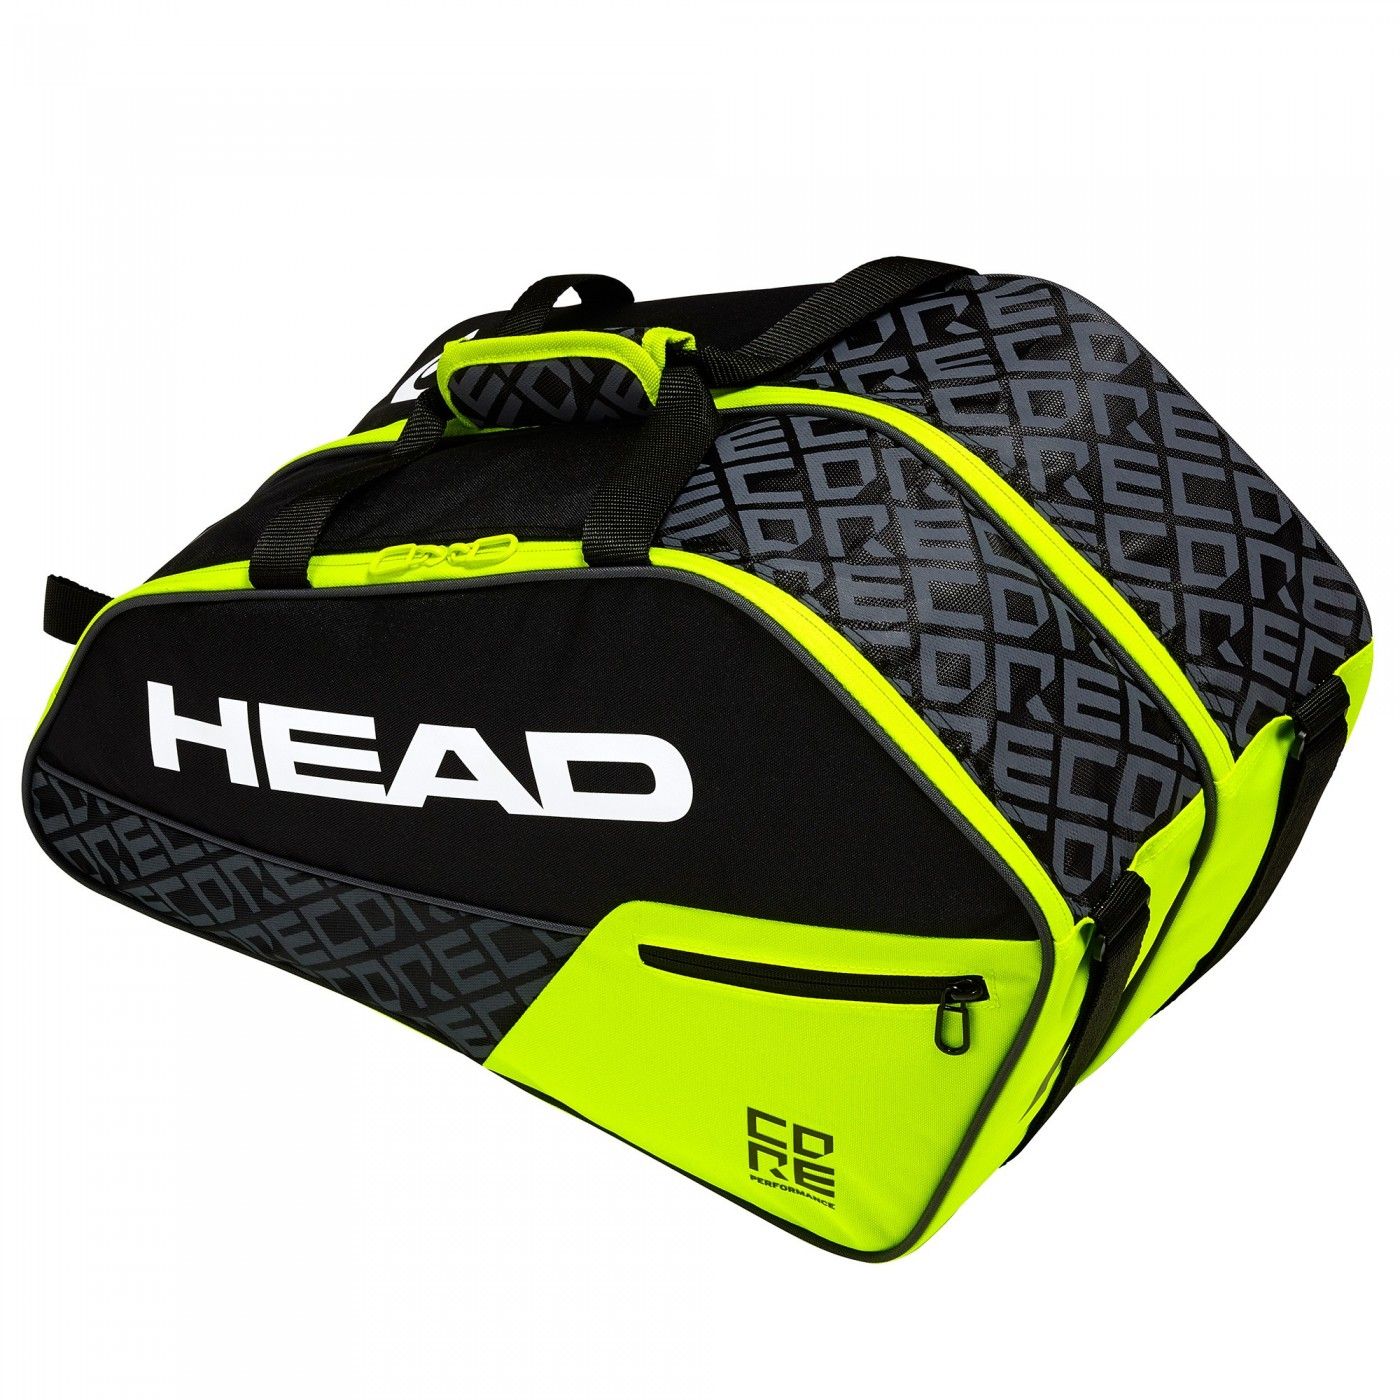 Padel racket bag Head Core Combi | Ofertas De Pádel